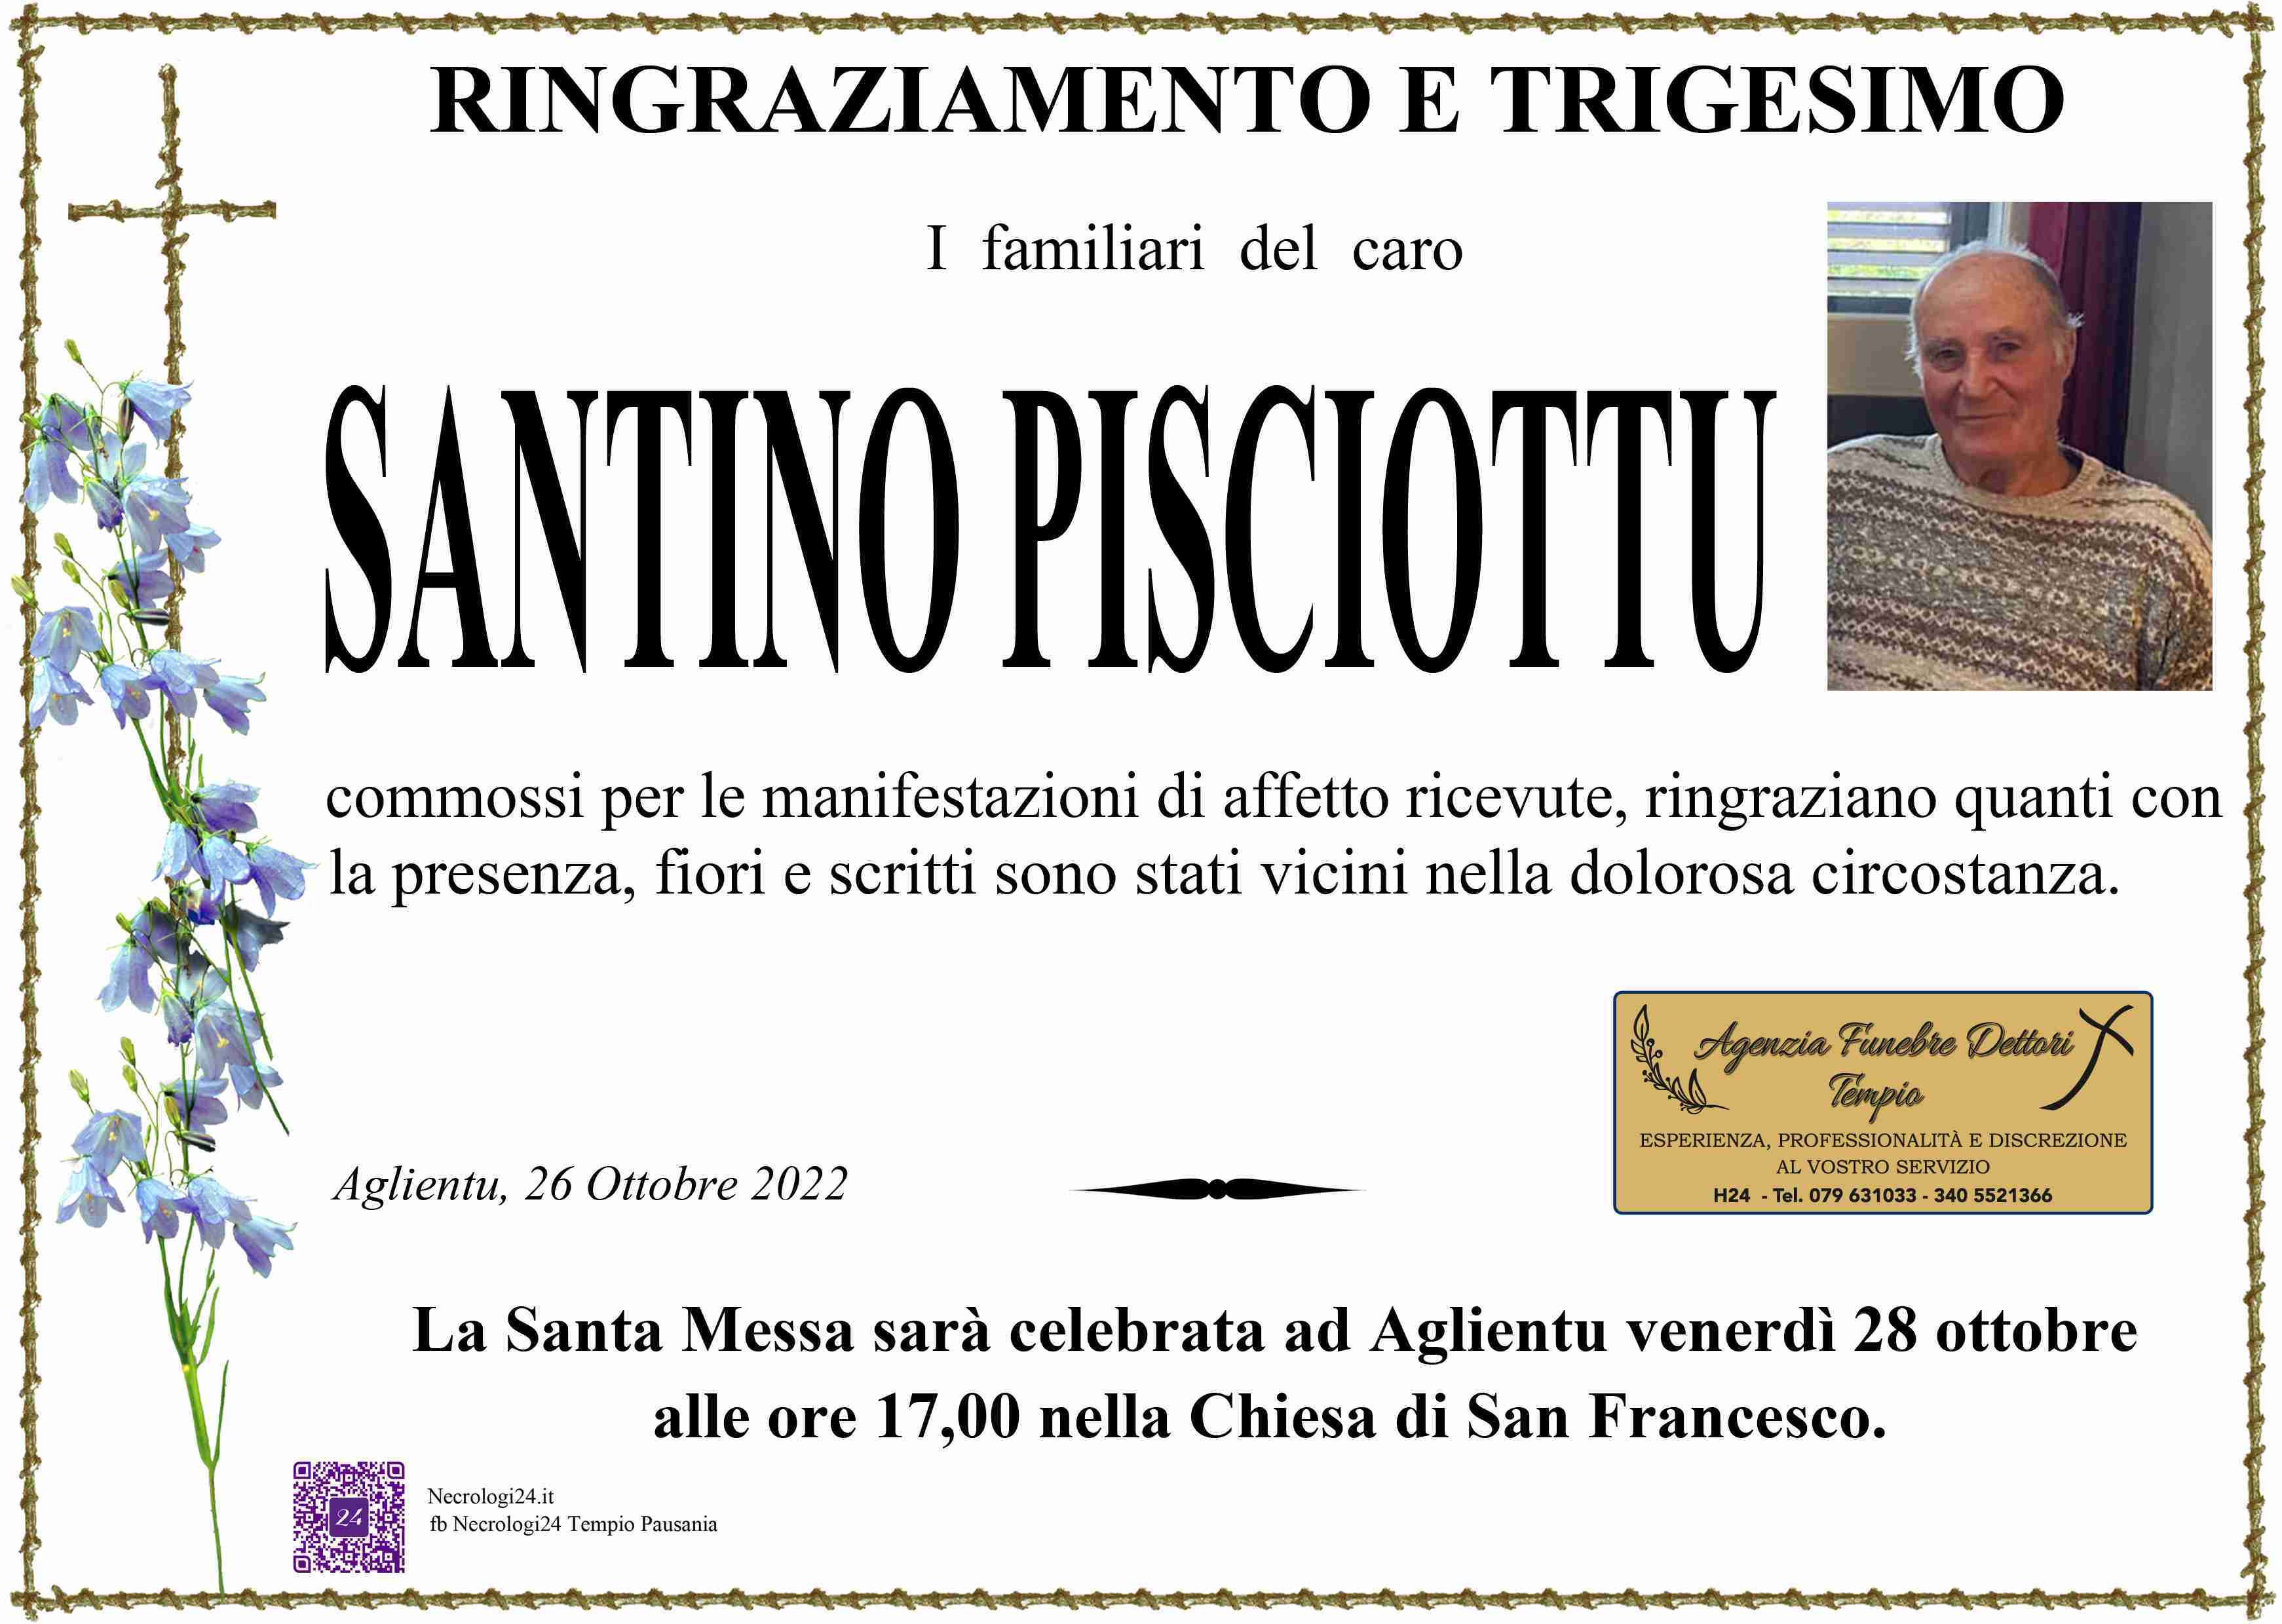 Santino Vittorio Pisciottu